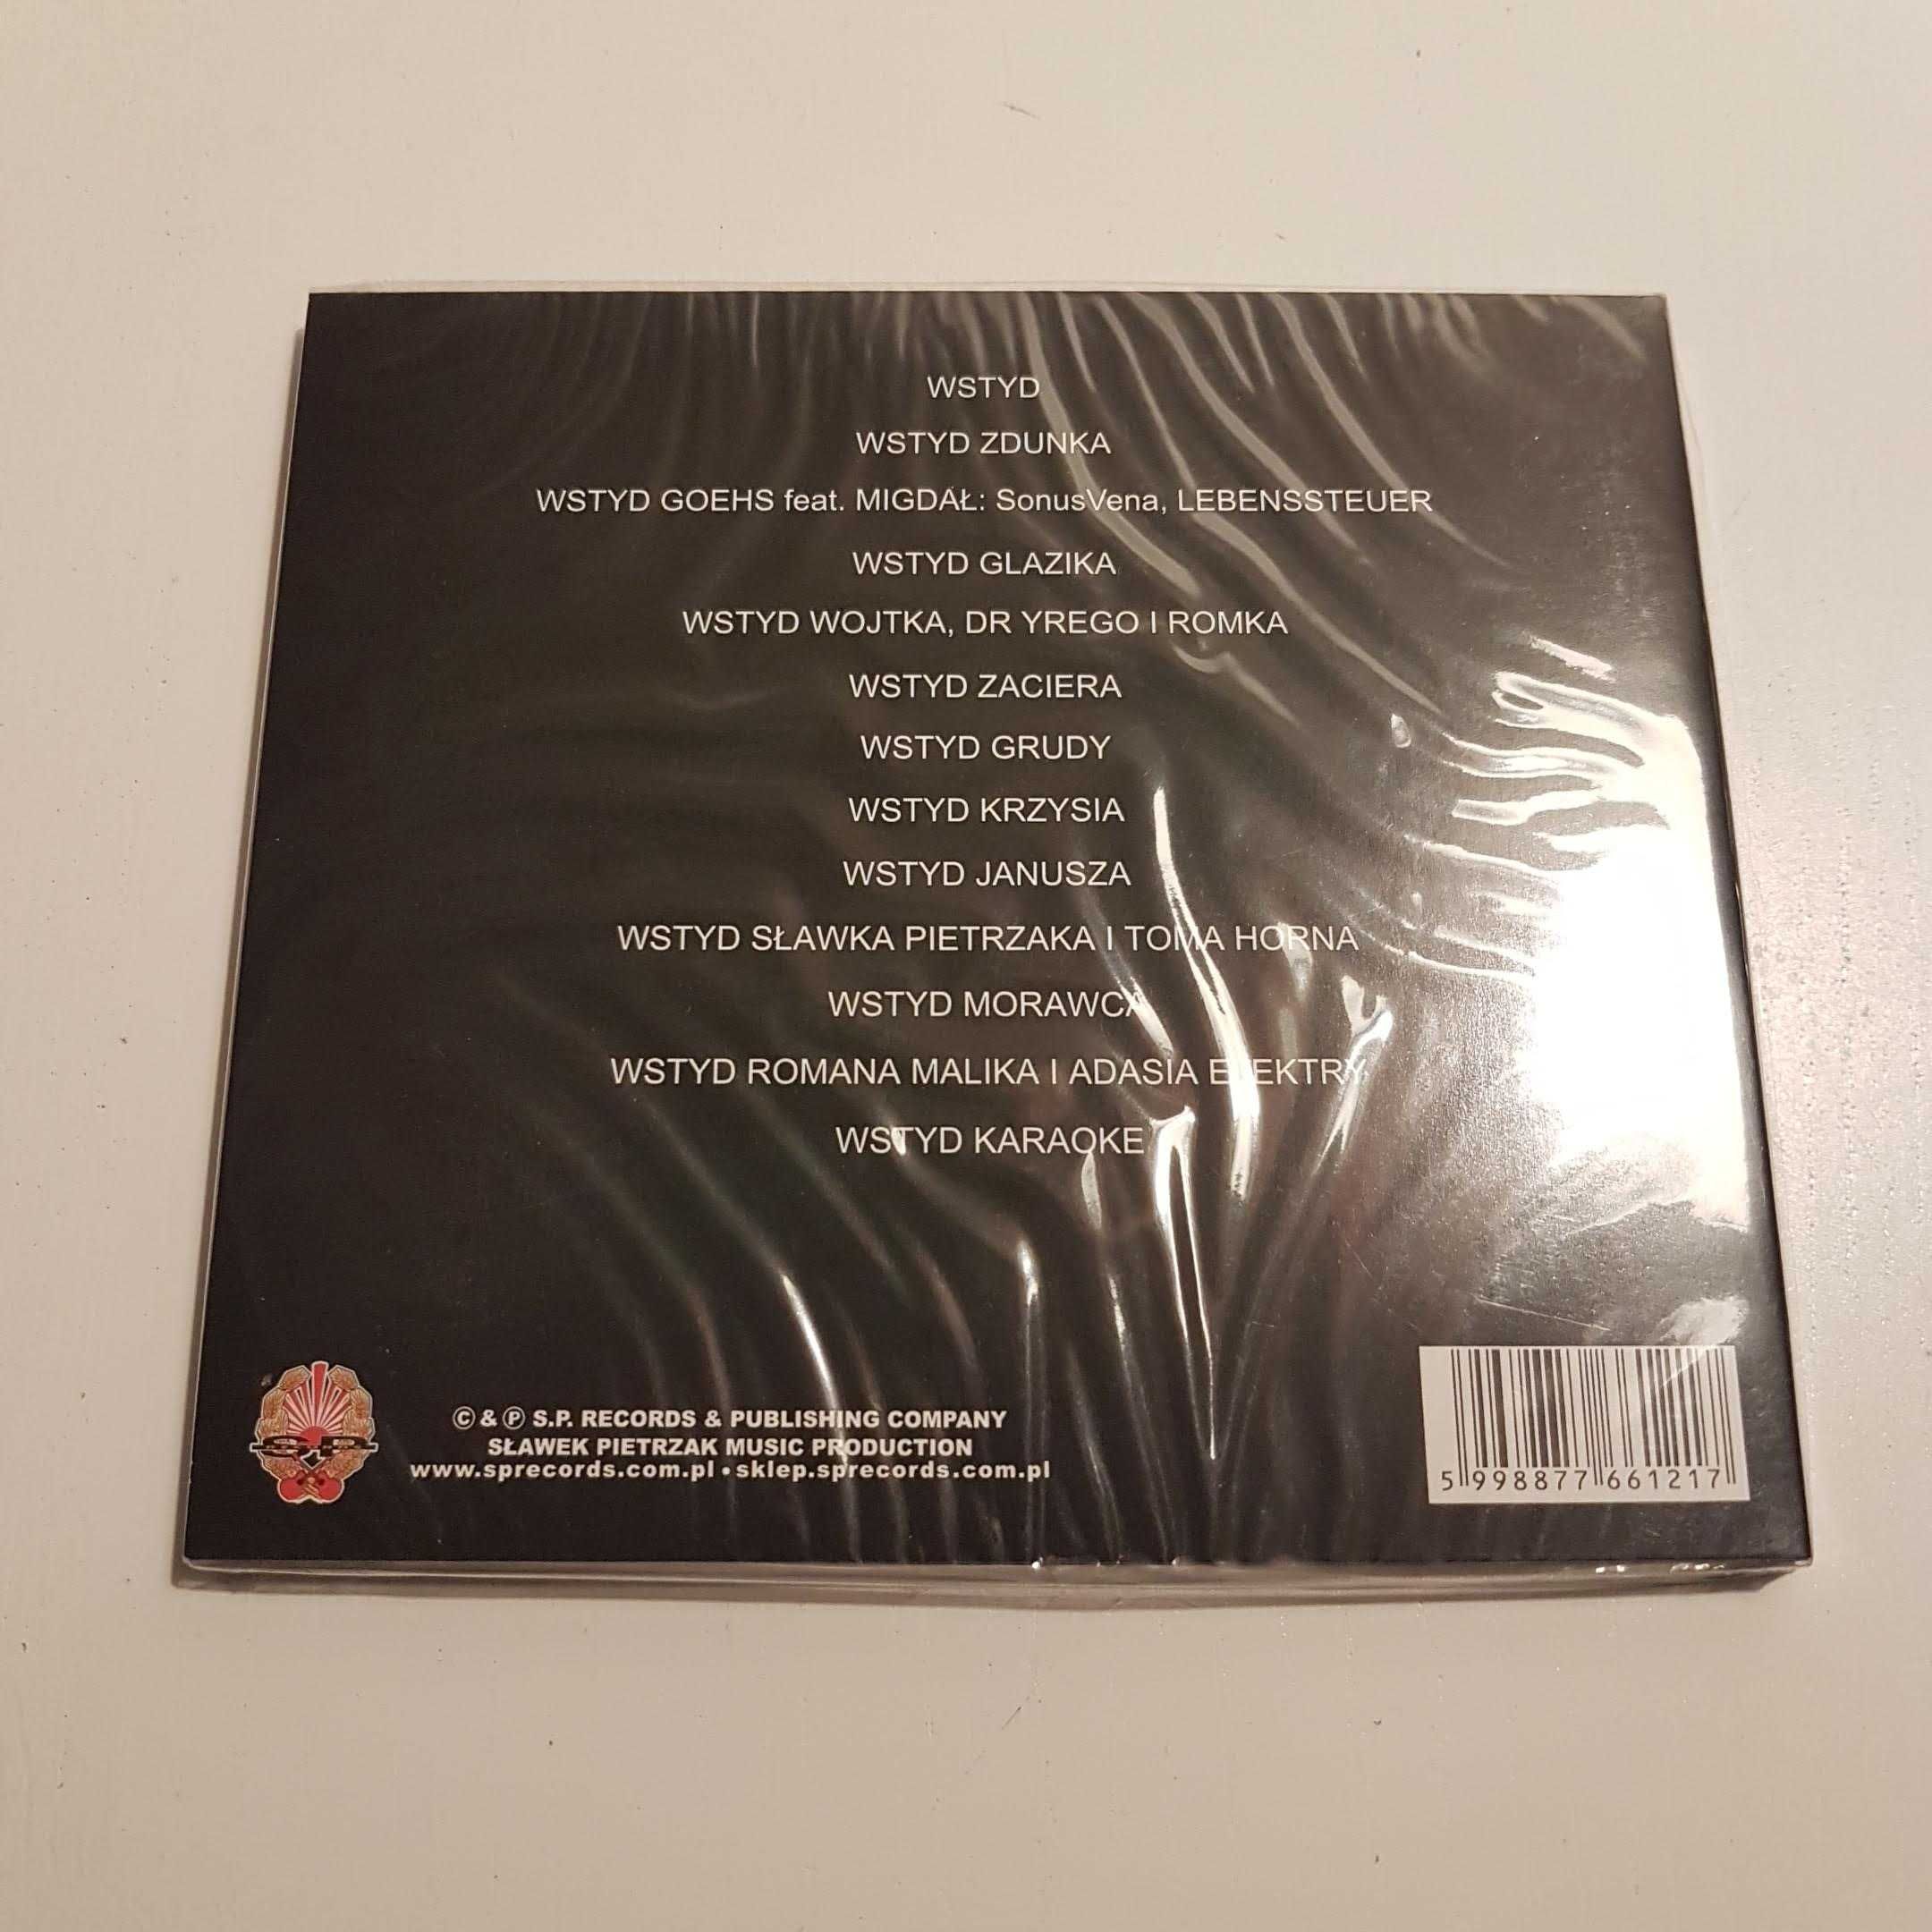 KULT - Wstyd Singiel nr 636 Pierwsze wydanie CD